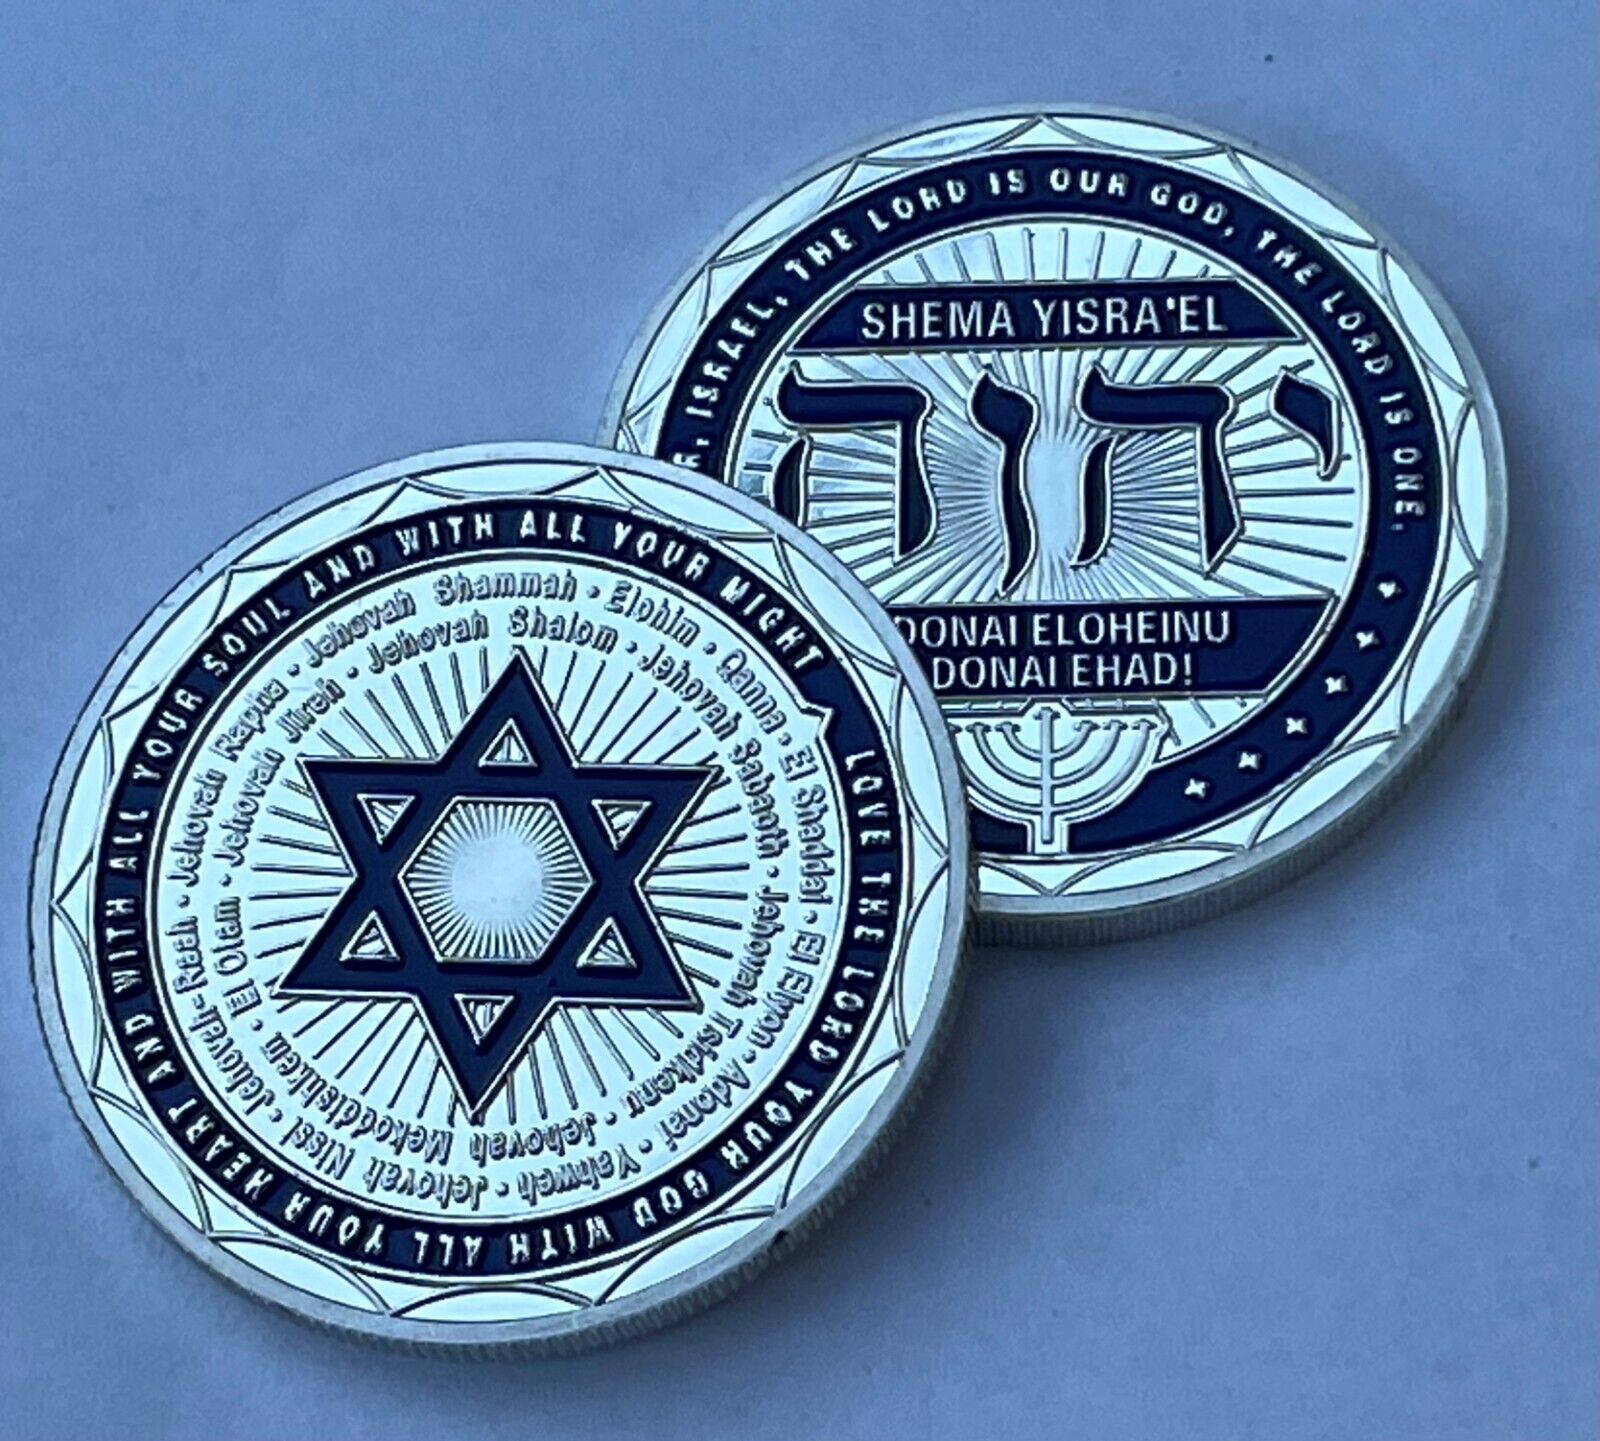 Israeli Jewish Christian Commemorative Challenge Coin SHEMA YASRA'EL